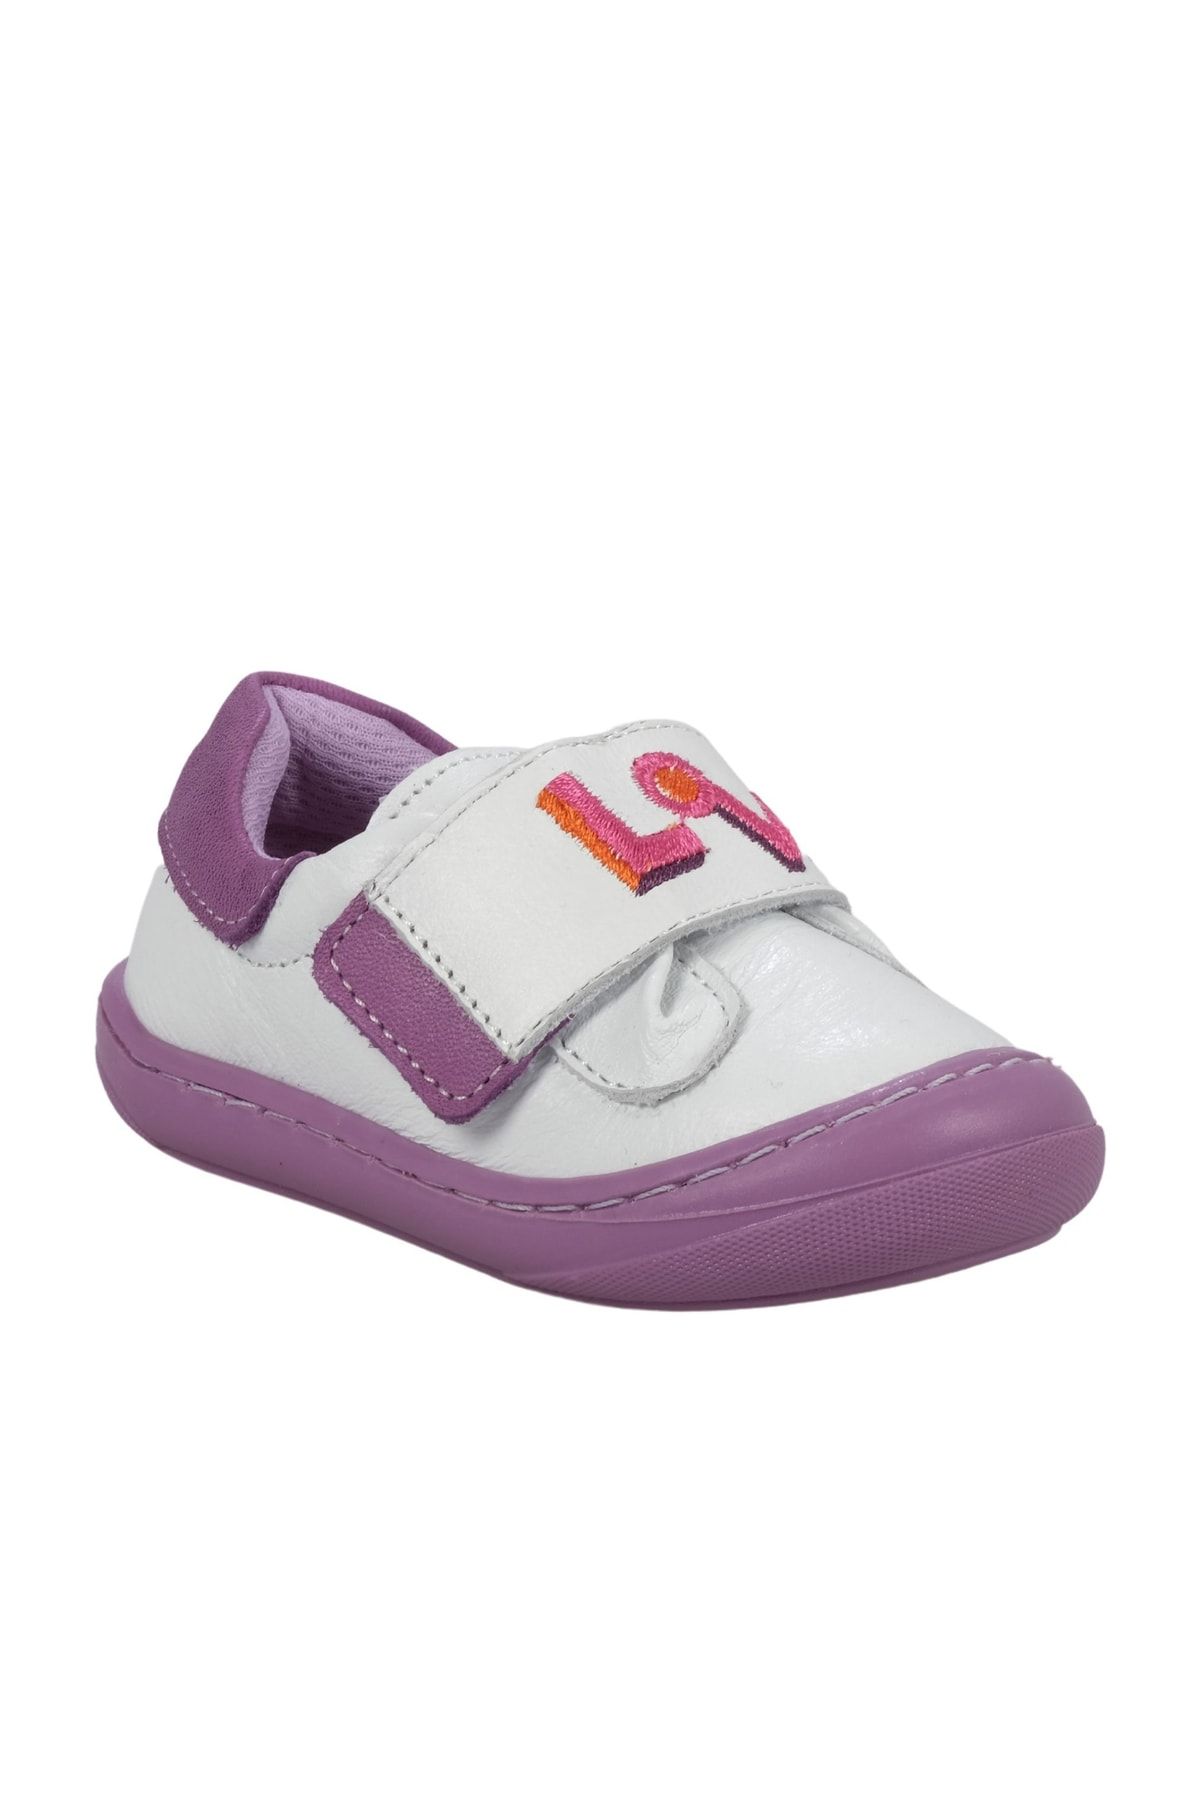 Dudino Dıdino Dora Love Çocuk Spor Ayakkabı (2c89b250)